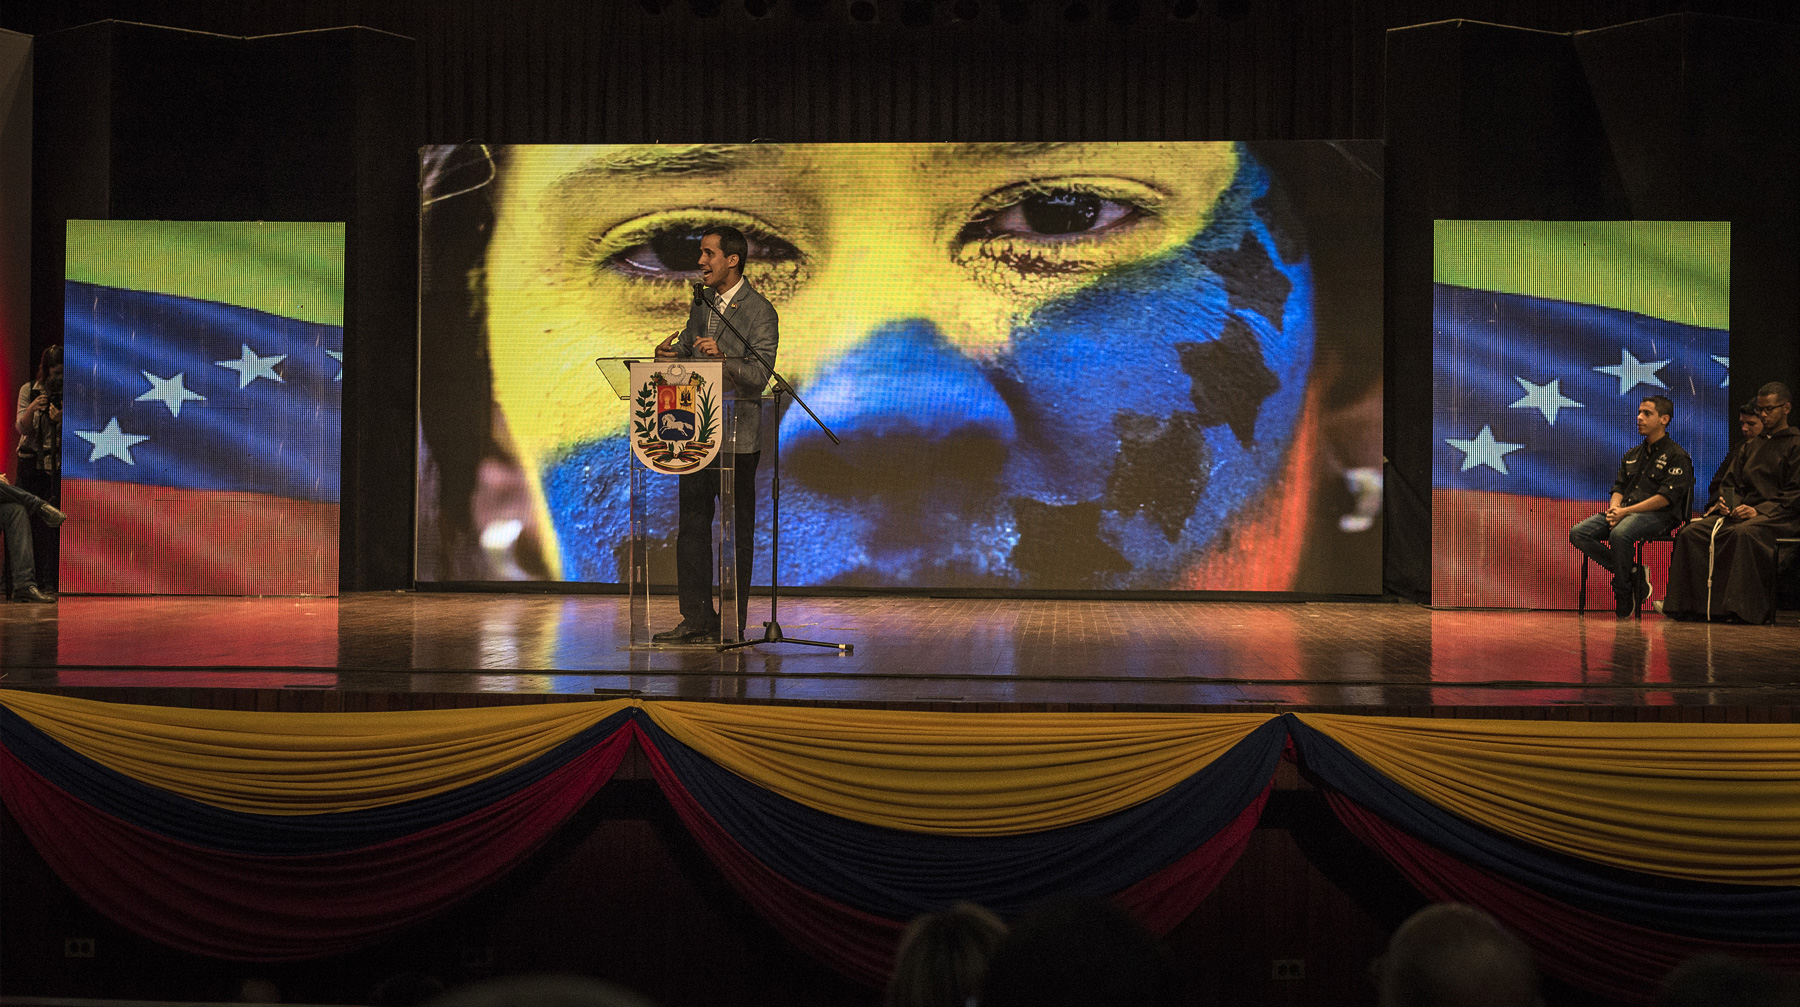 Российский документ будет рассмотрен одновременно с американской версией решения венесуэльского конфликта Хуан Гуайдо выступает перед студентами, Венесуэла, Каракас, 8 февраля 2019 г.